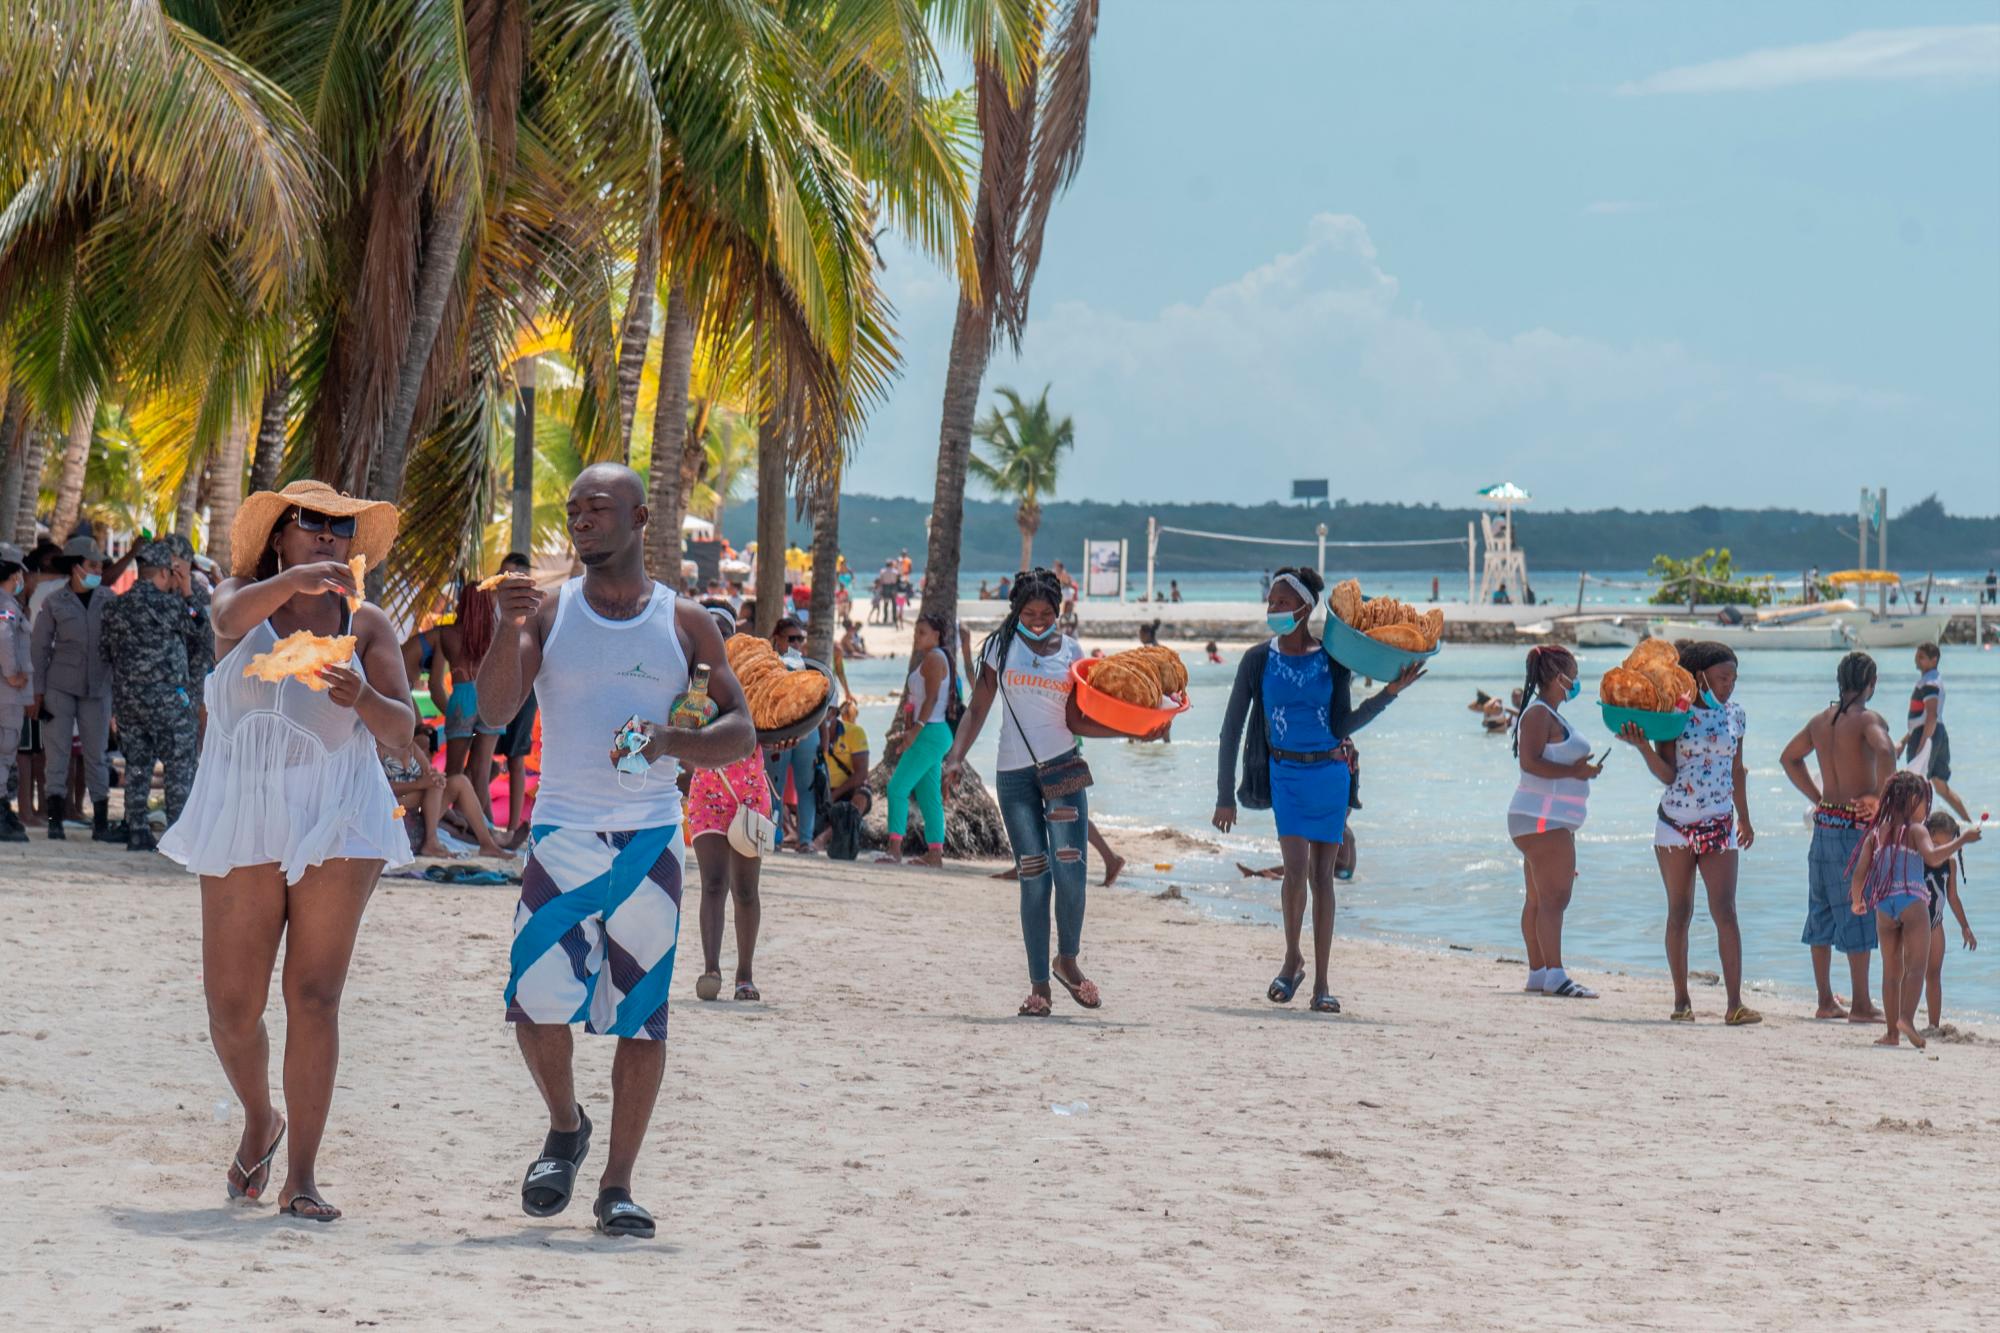 La playa de Boca Chica estuvo repleta de visitantes el pasado sábado, pero el domingo disminuyó considerablemente, lo que es atribuido a las medidas de seguridad desplegado por los organismos de socorro, la Policía y otras instituciones.  (Pedro Bazil)